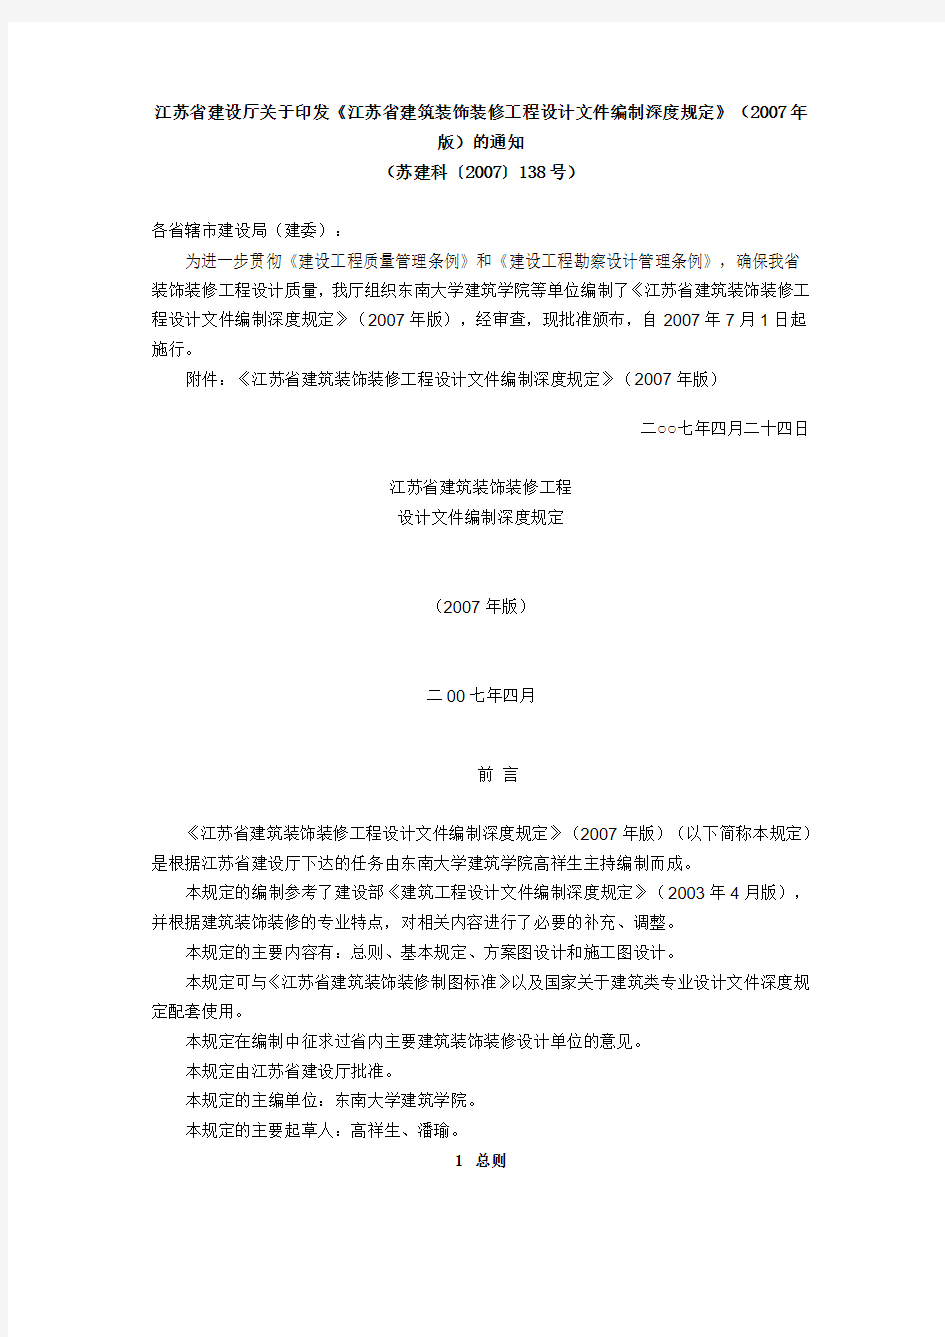 《江苏省建筑装饰装修工程设计文件编制深度规定》(2007年版)